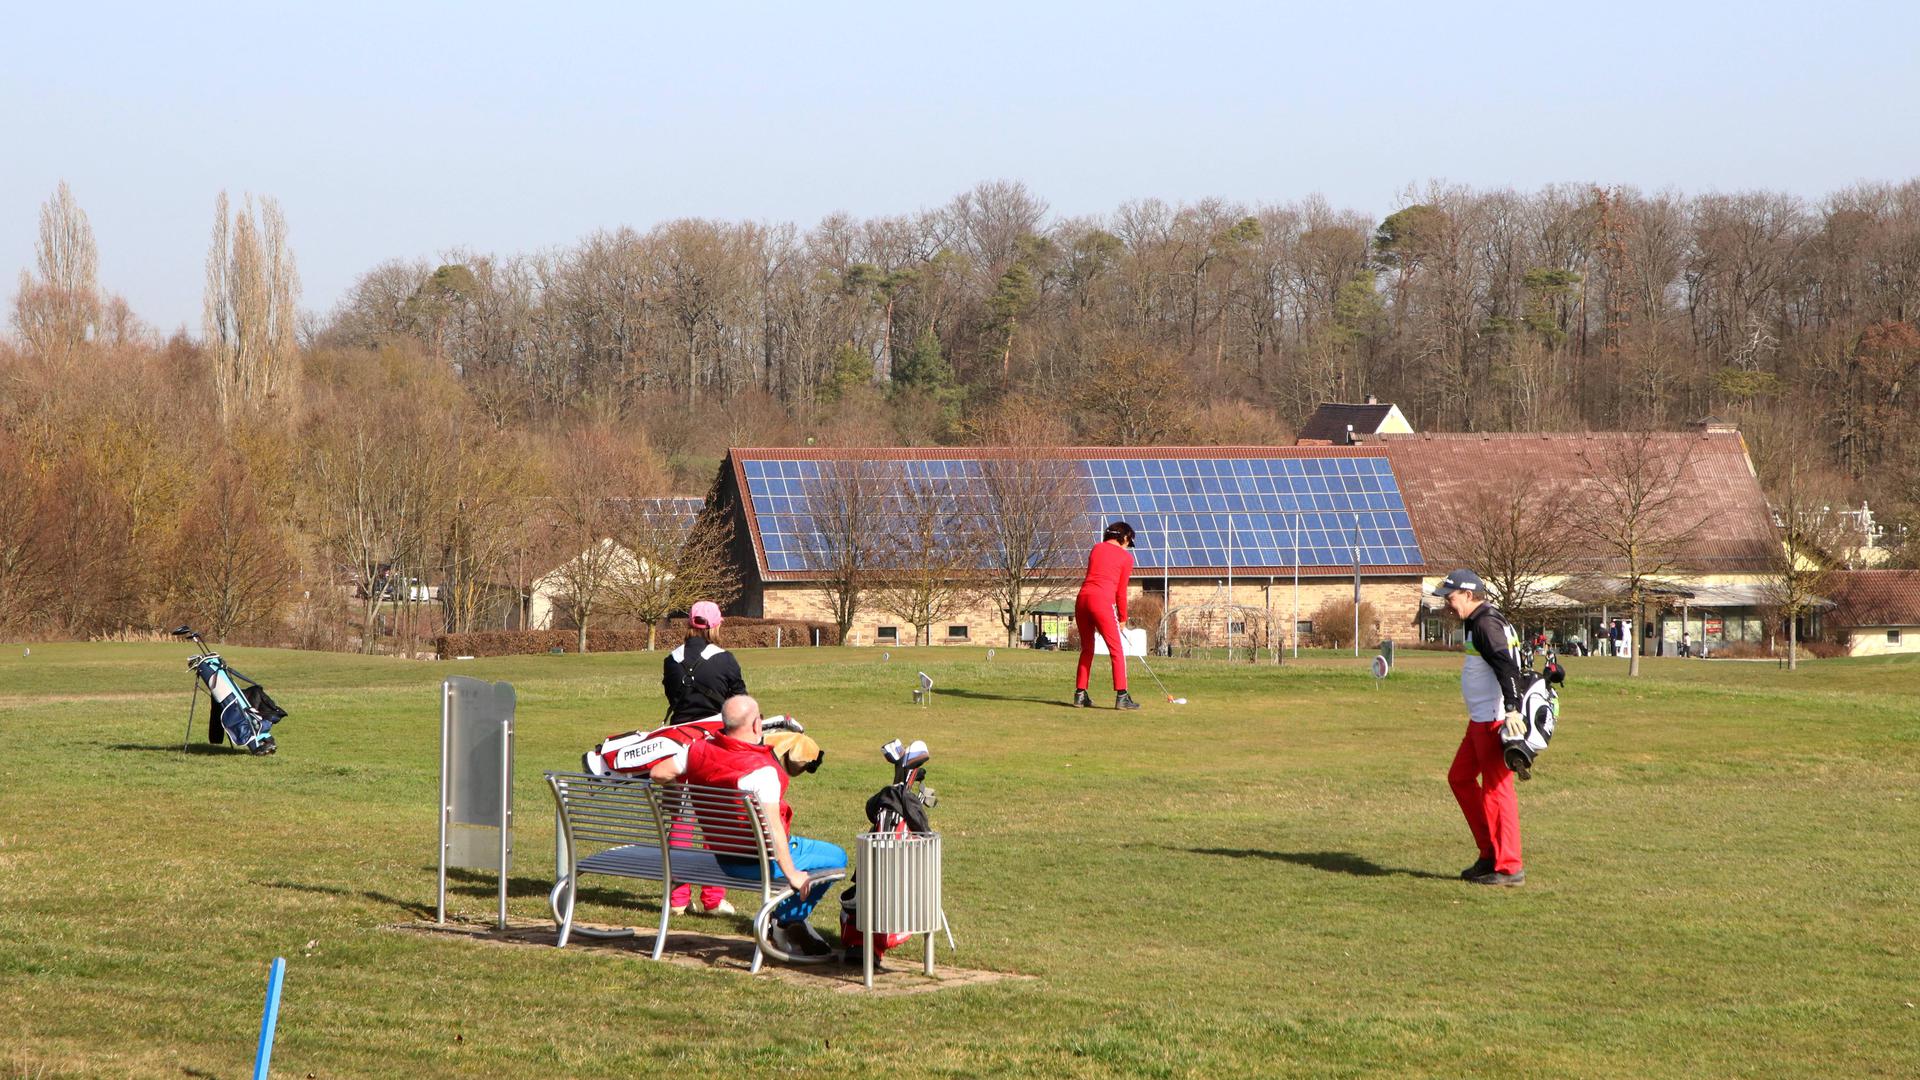 Spielbetrieb gestartet: Auf dem Golfplatz auf dem Karlshäuser Hof wird dank des milden Wetters wieder gespielt. Der Karlshäuser Hof ist außerdem für 2021 als Trainingsstandort für die Jugendarbeit des Baden-Württembergischen Golfverbands ausgewählt worden.